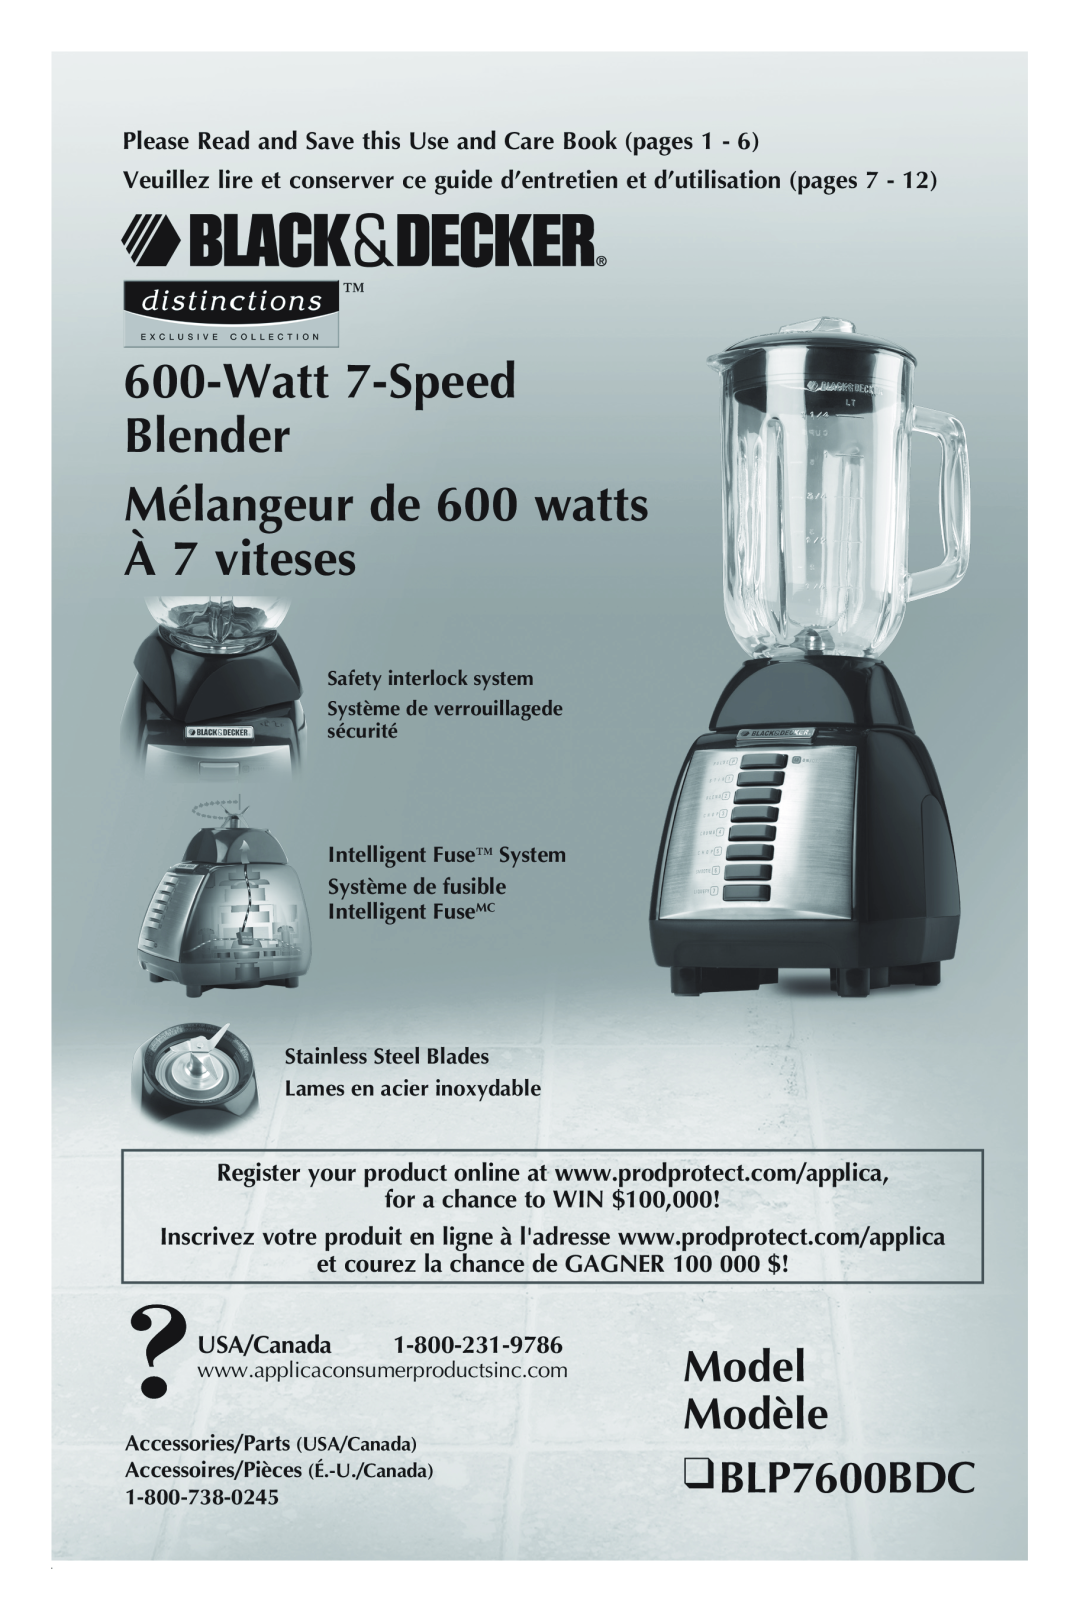 Black & Decker manual Model Modèle BLP7600BDC, Watt 7-Speed Blender Mélangeur de 600 watts À 7 viteses, USA/Canada 